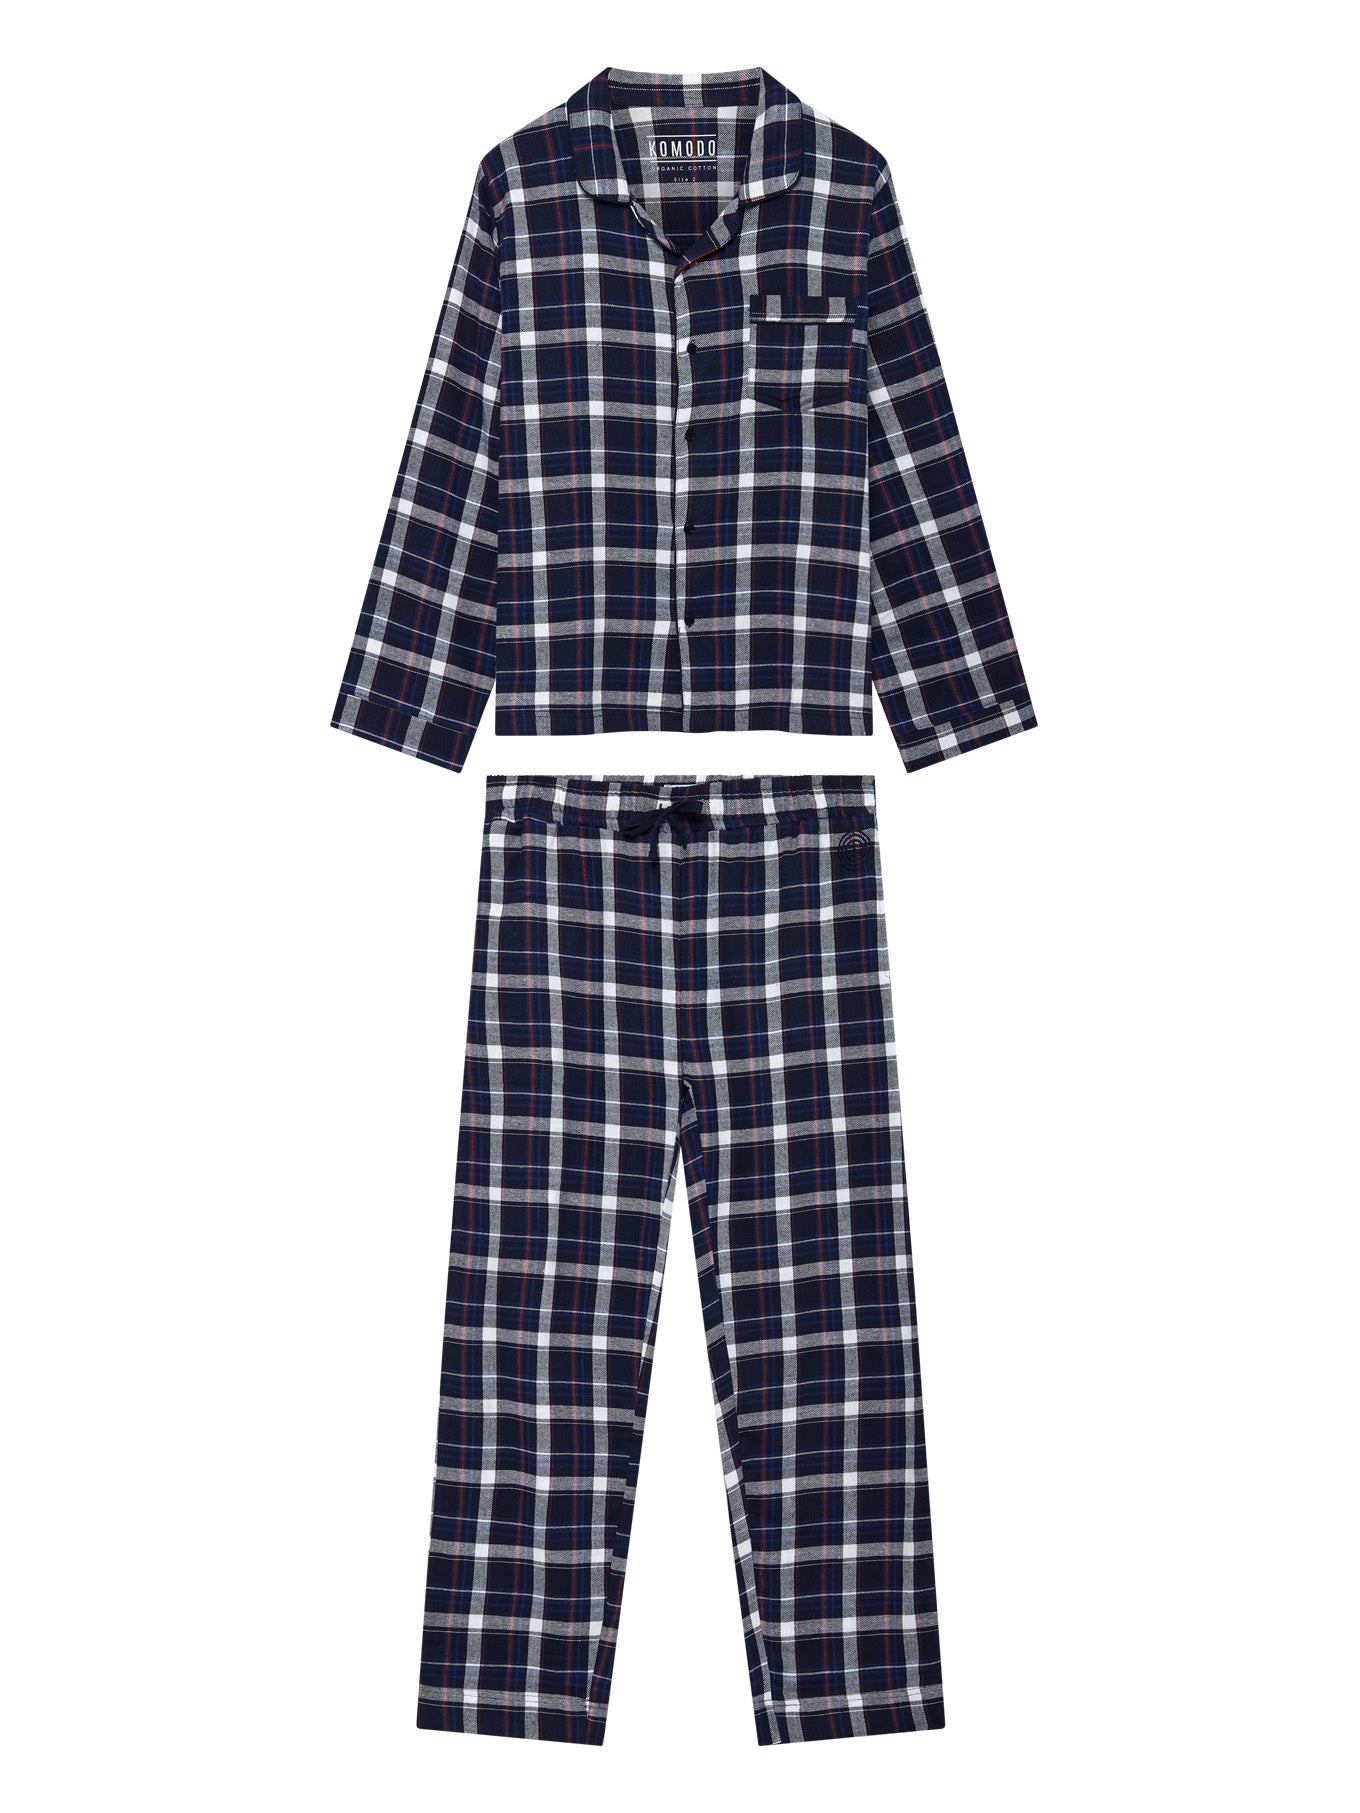 Dark blue pajama set JIM JAM made of 100% organic cotton from Komodo 